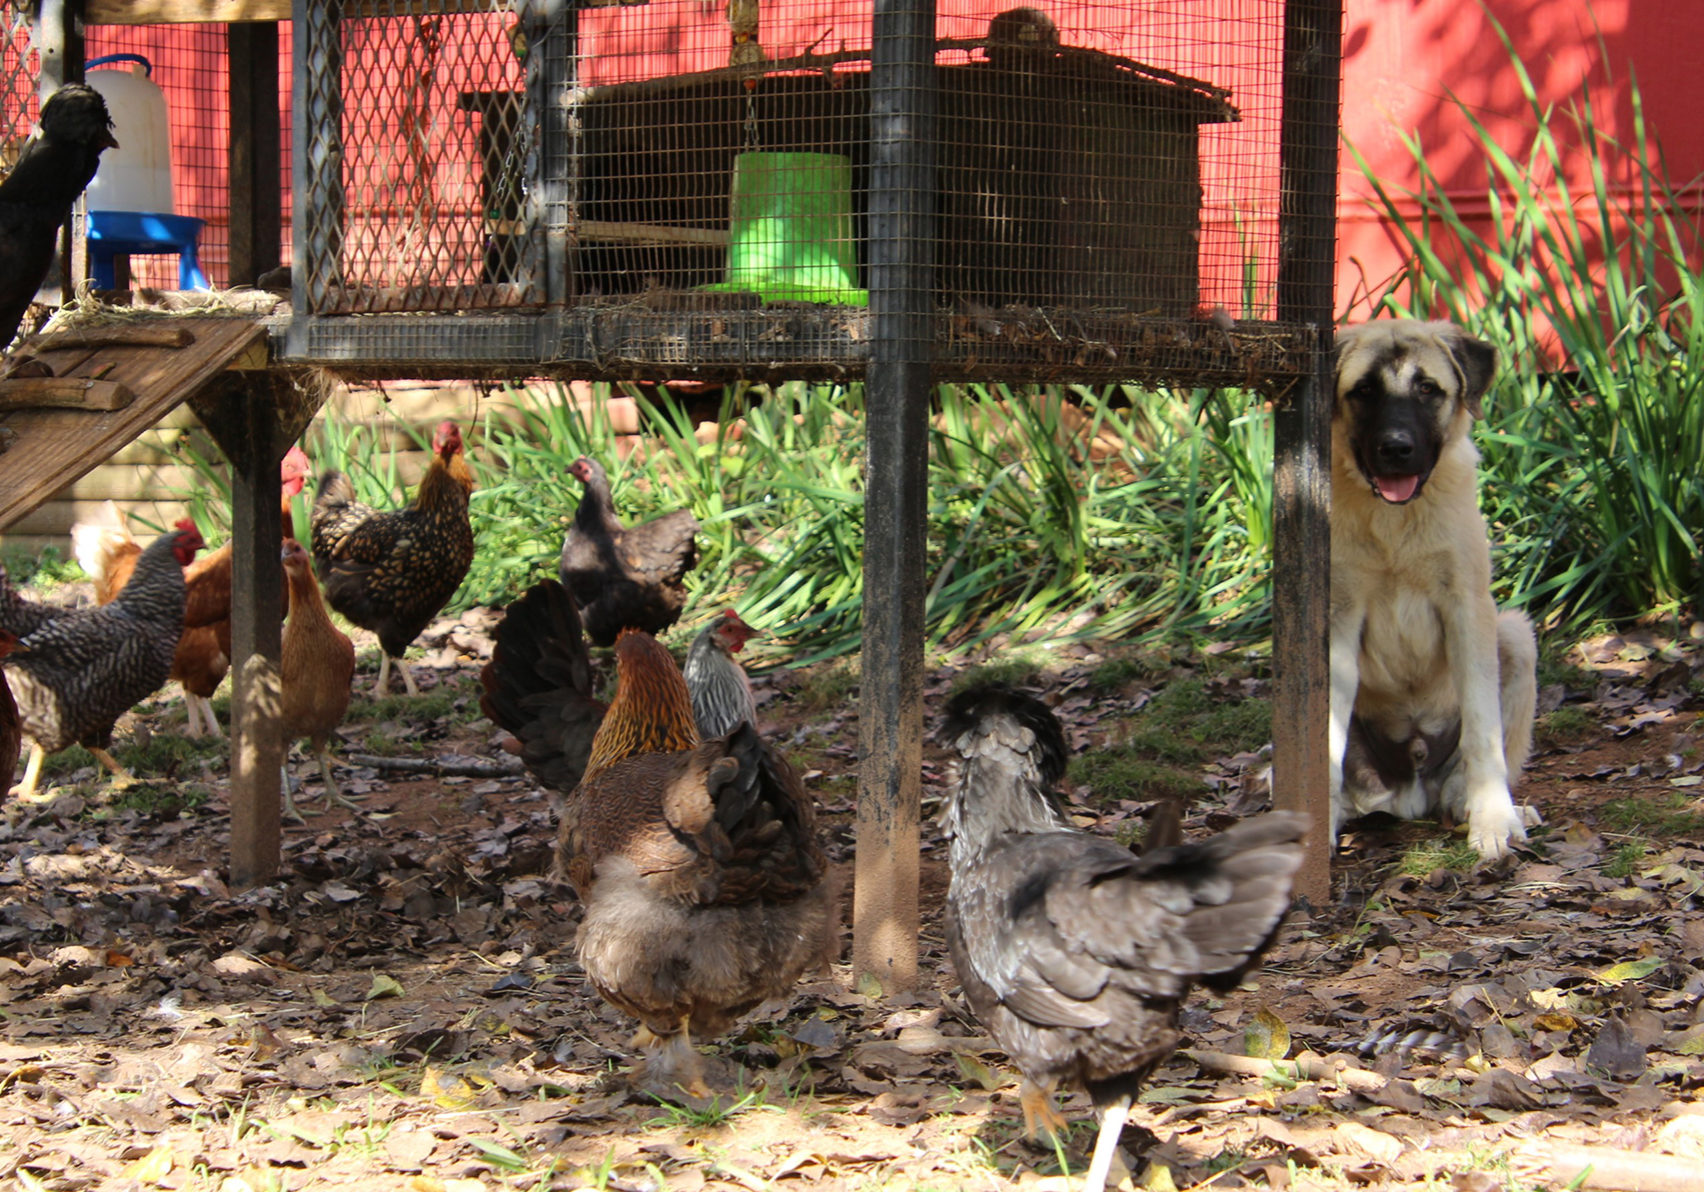 Chickens around a chicken coop